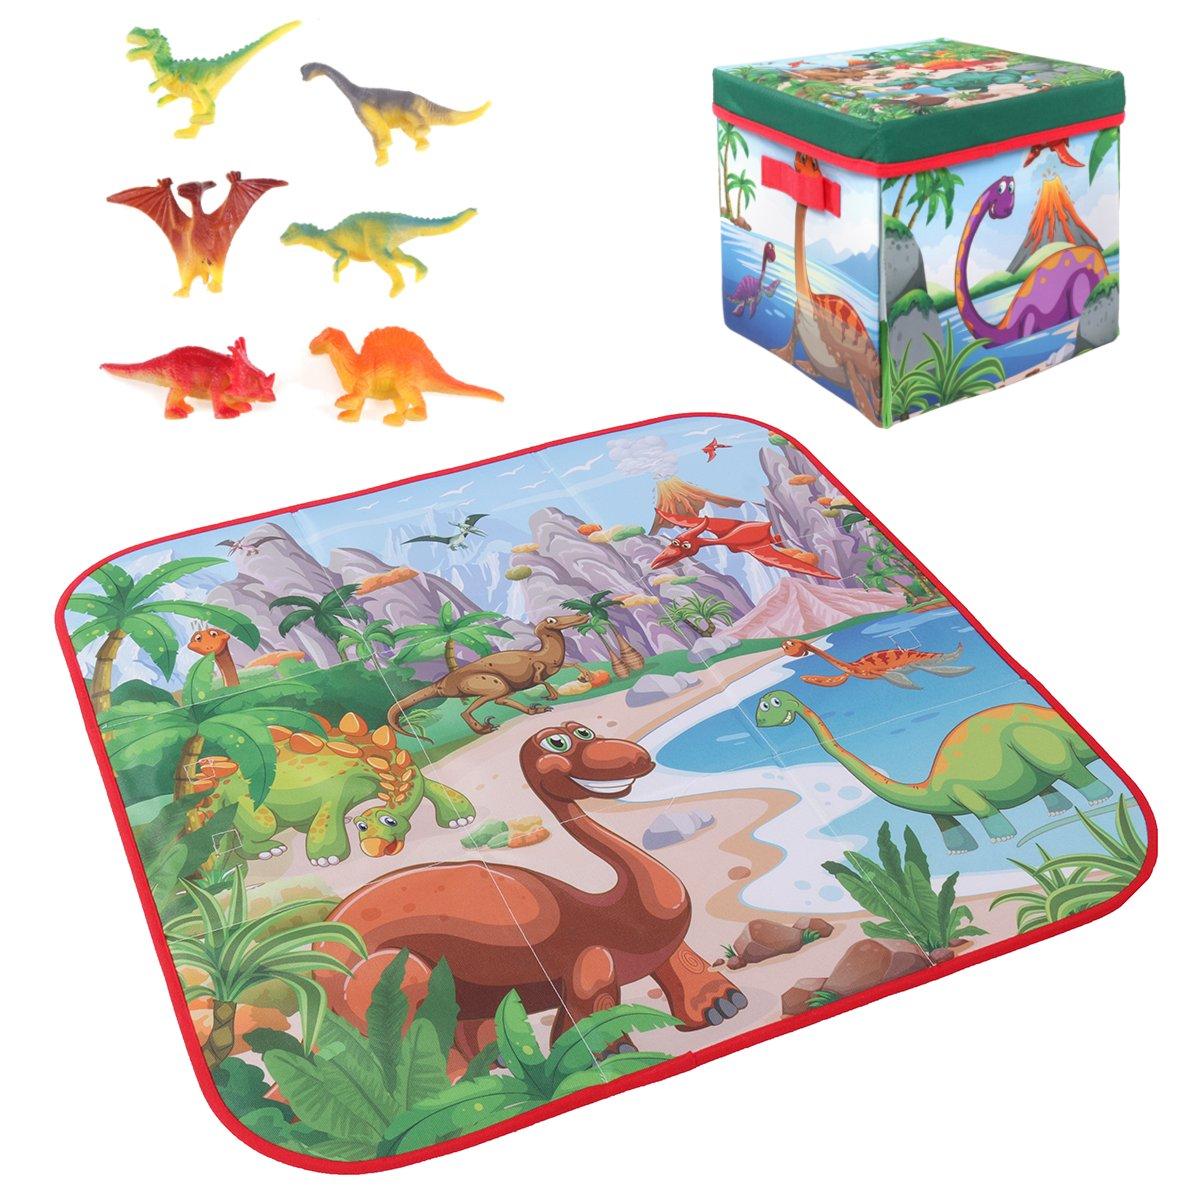 72х72 см детский коврик для игр с карикатурными персонажами + 6 игрушек-динозавров, квадратный складывающийся ящик для пикника и кемпинга, коврик для ползания ребенка.